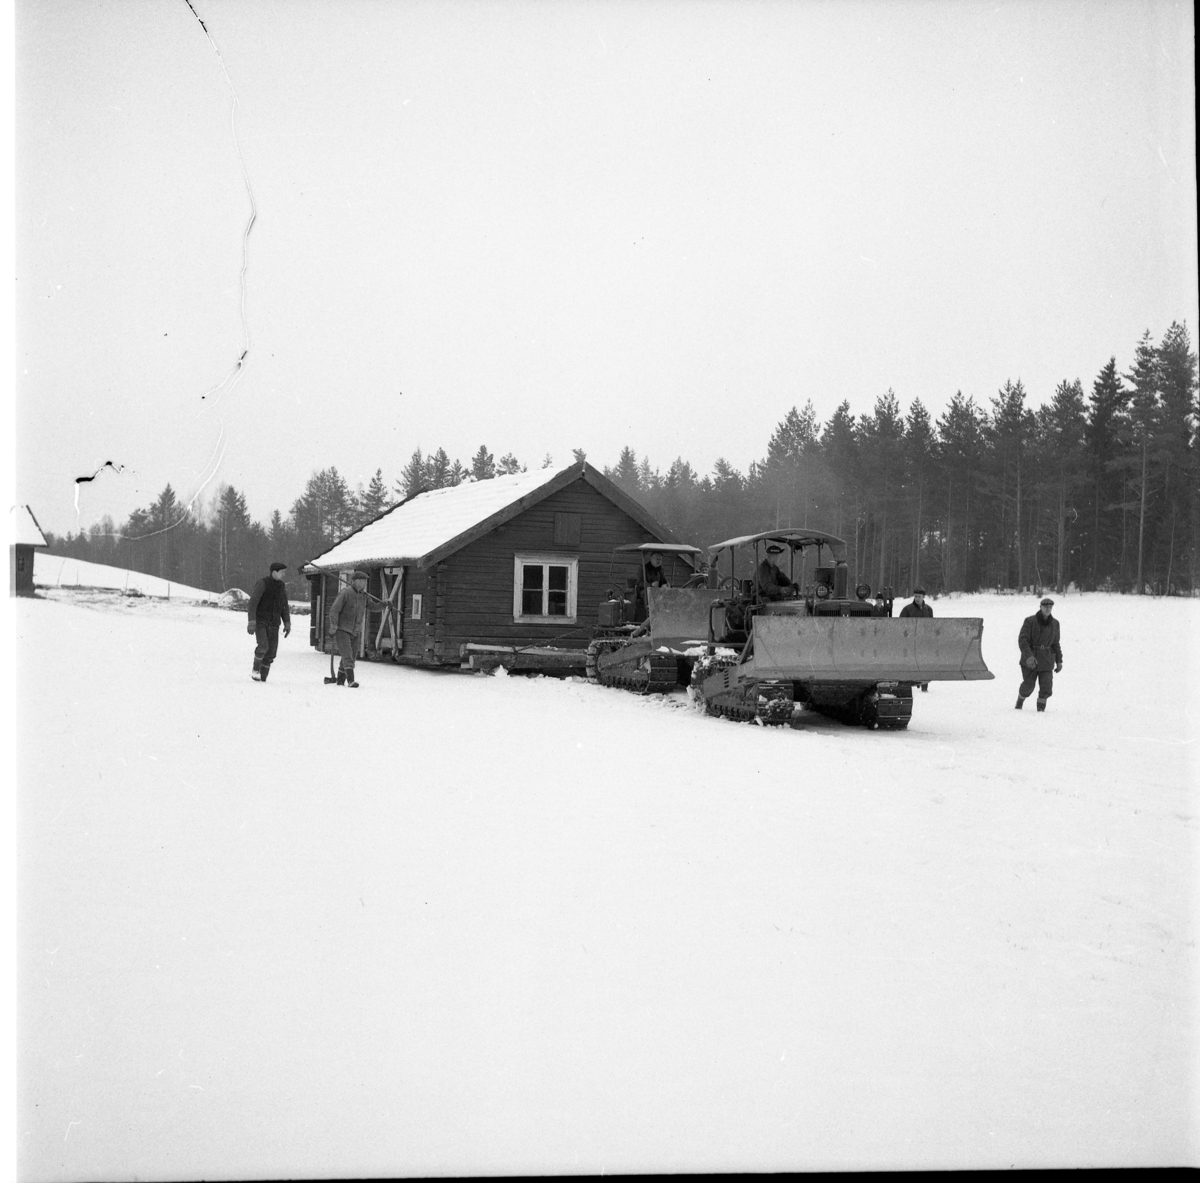 Husflyttning i Floddalen, Hullaryd. Två caterpillars i rad drar en timmerstuga över ett snöigt landskap, mars 1964.